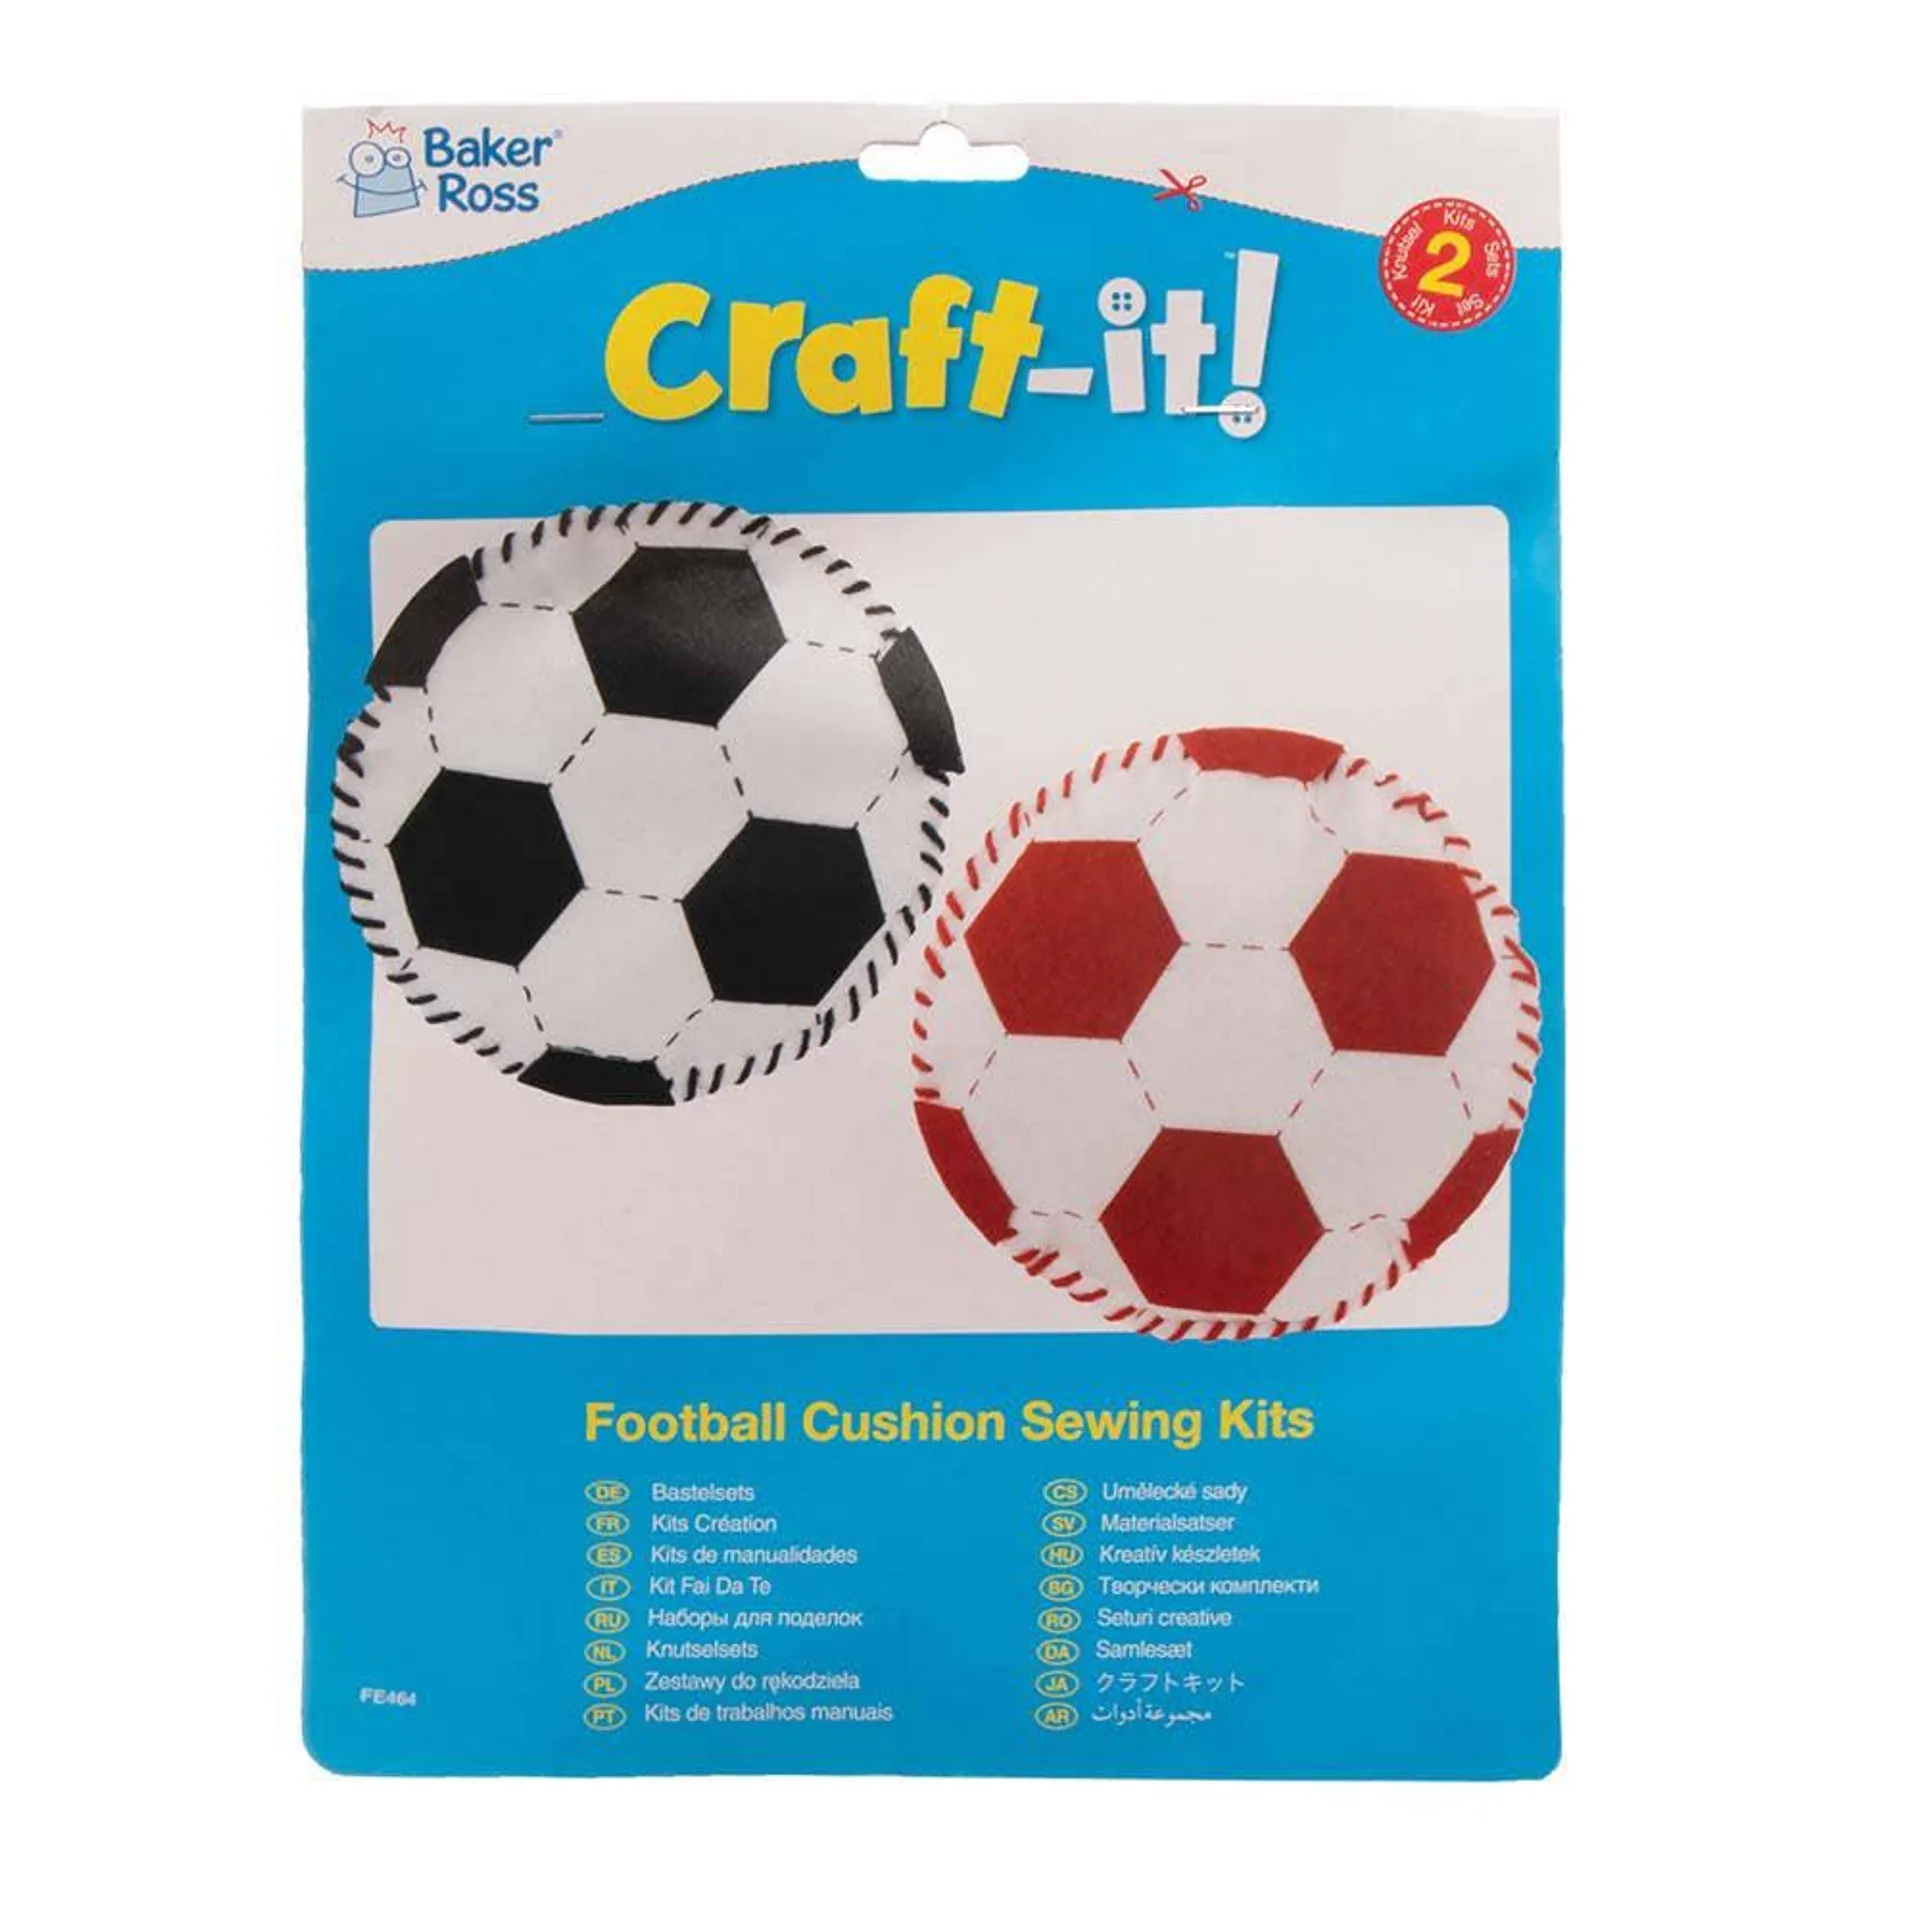 Football Cushion Sewing Kits